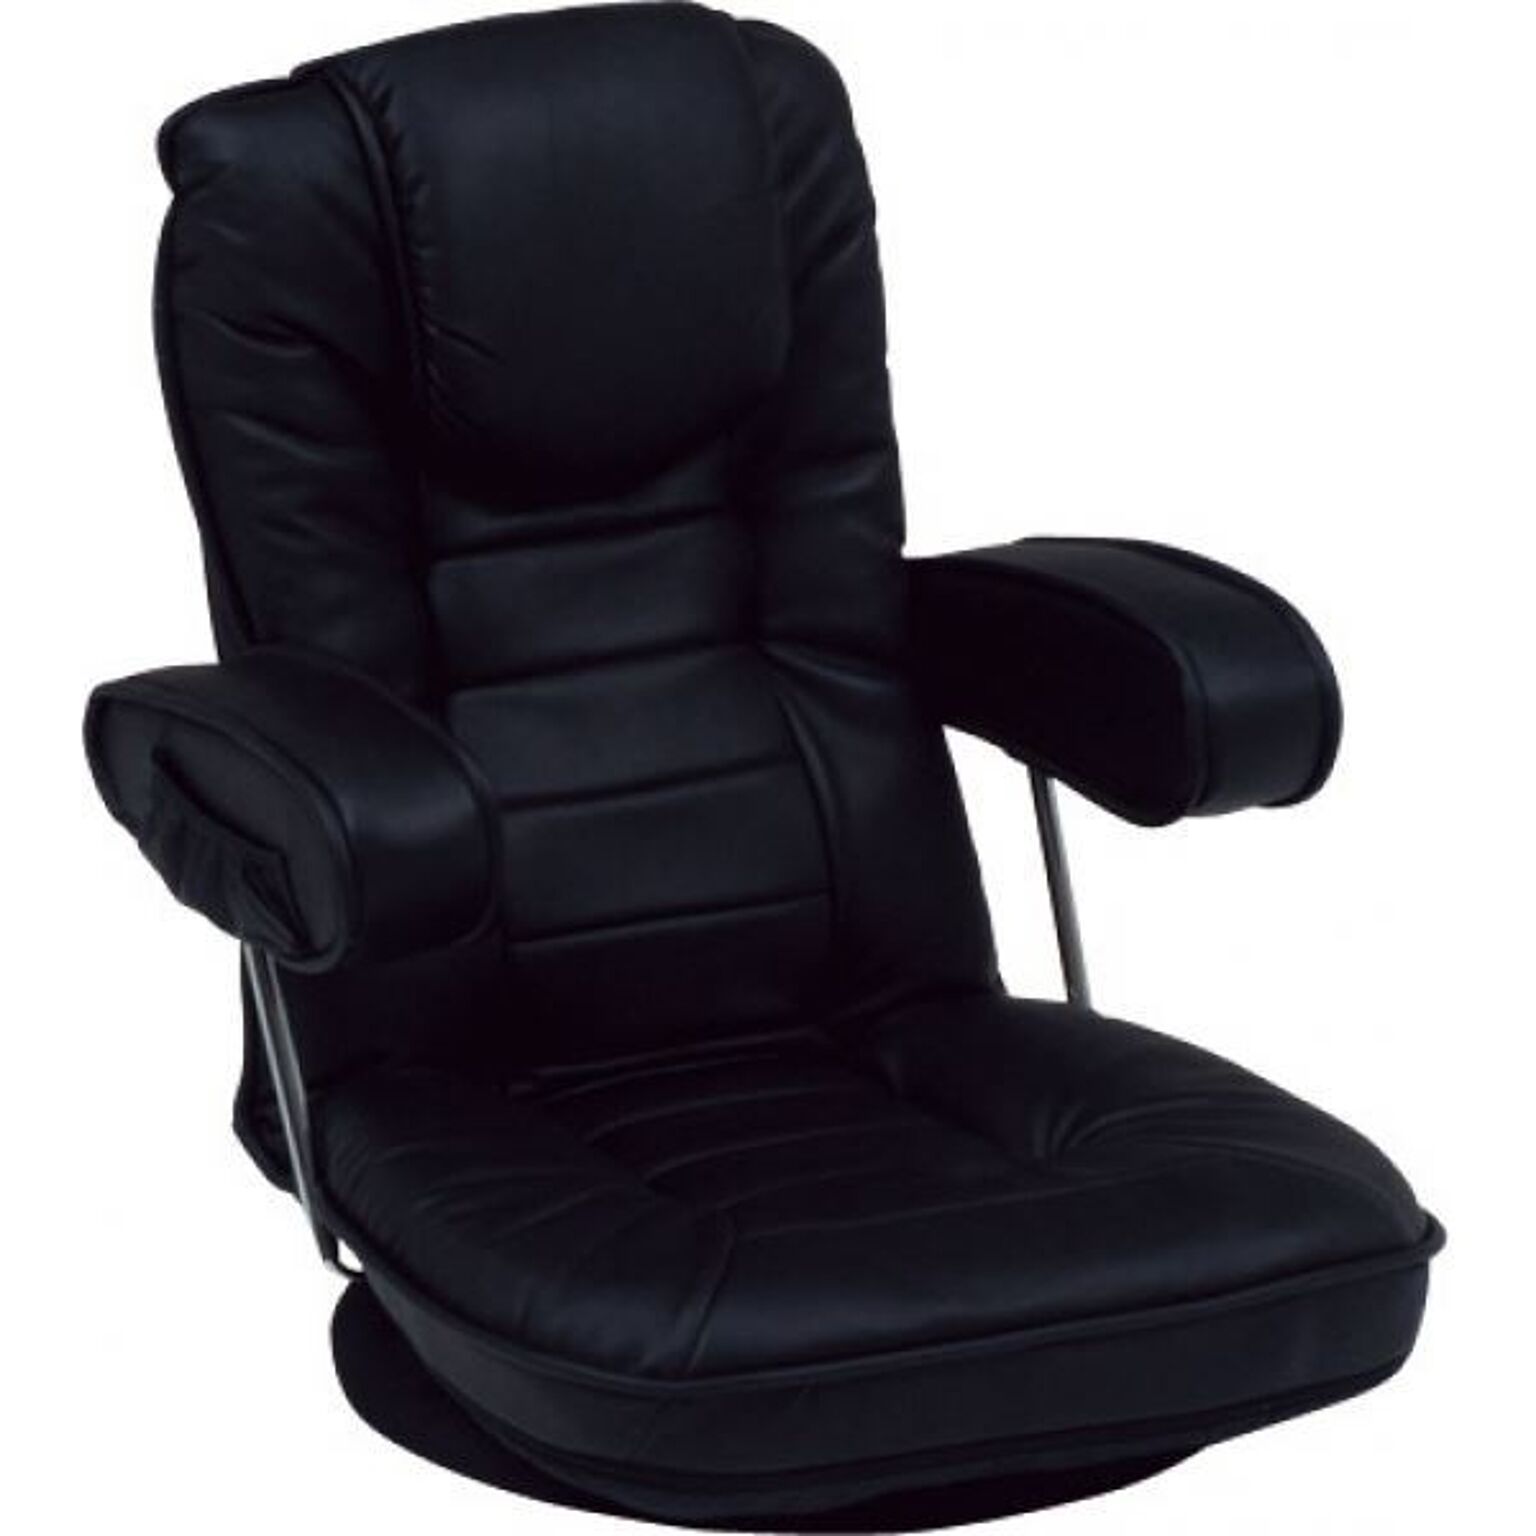 回転式 座椅子 パーソナルチェア 約幅60cm ブラック 跳ね上げ式 肘付き 背部14段 リクライニング 頭部枕付 スチールパイプ